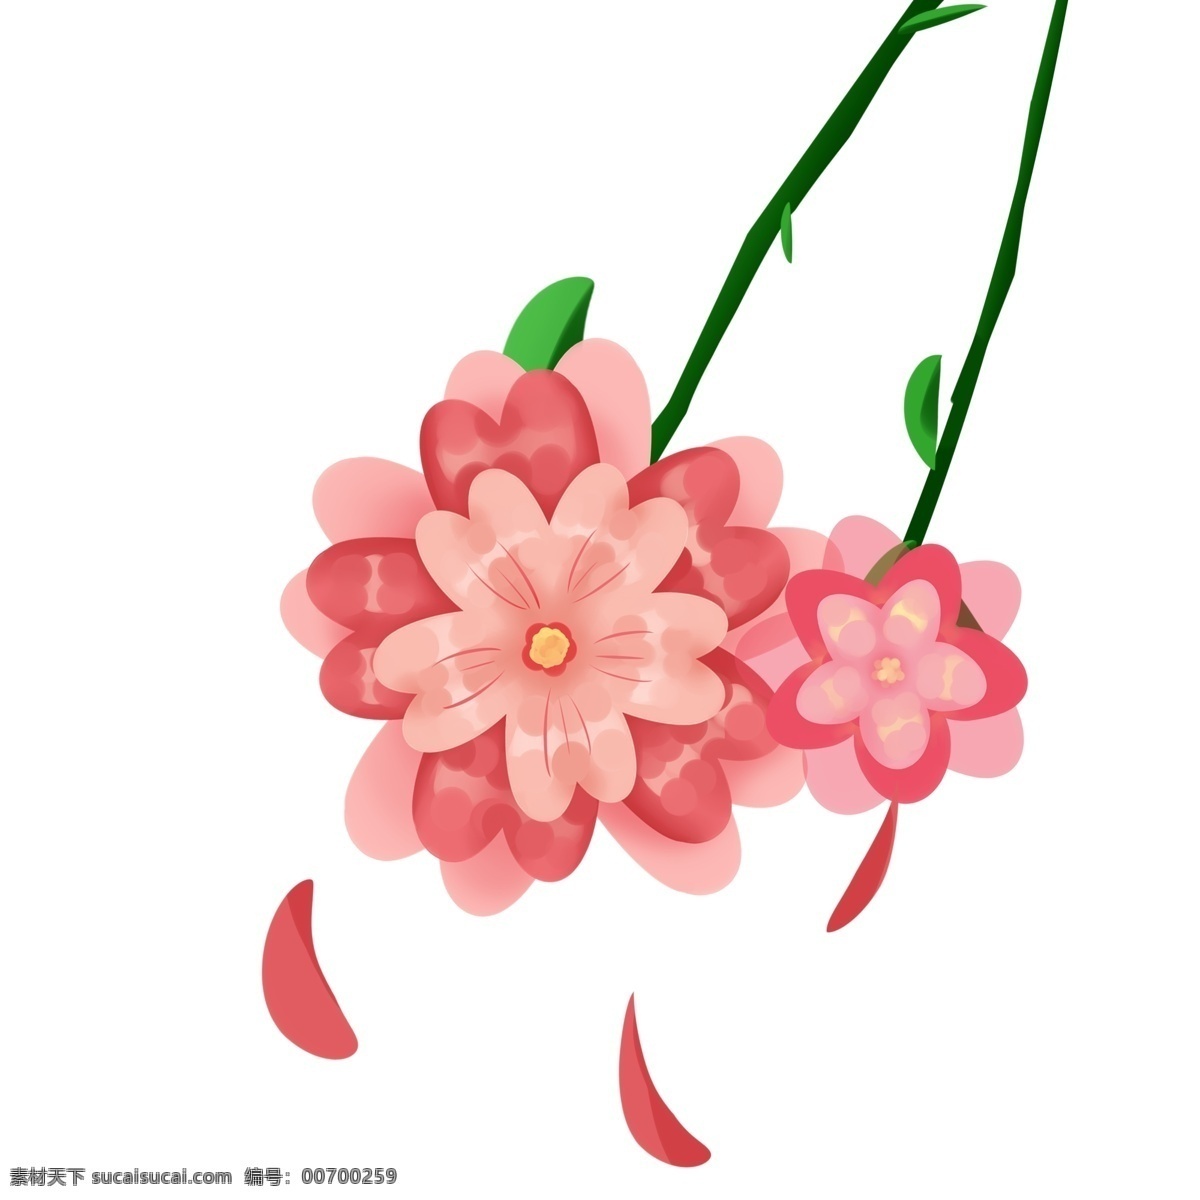 盛开 樱花 花朵 插画 粉色花朵 鲜花 花卉 植物 红色樱花 盛开的樱花 黄色花蕊 粉色花瓣